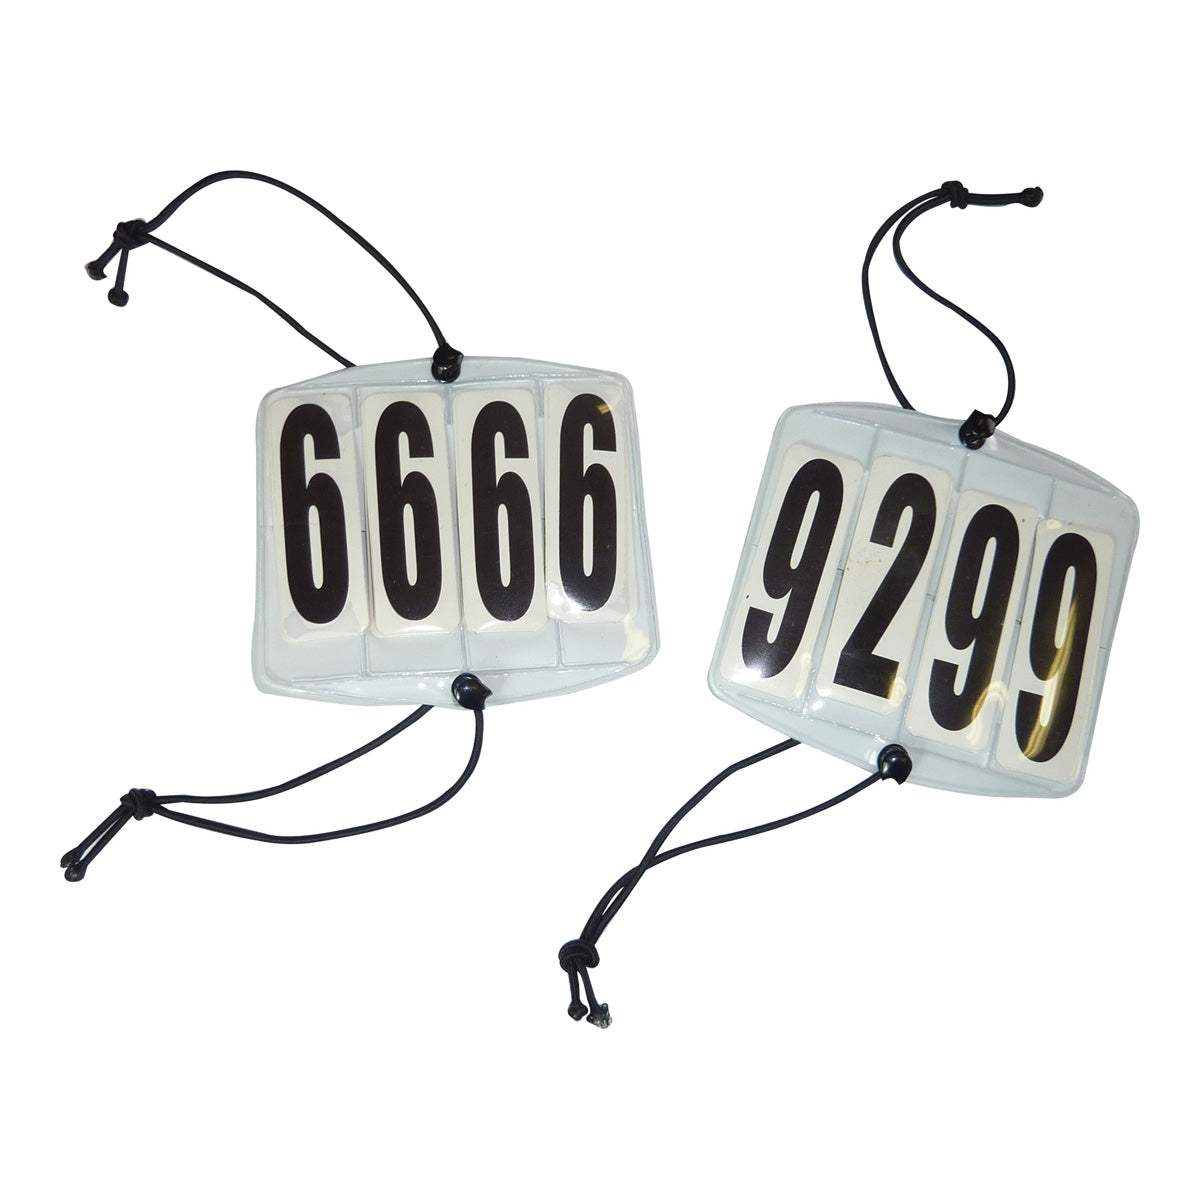 6808-1-1.jpg